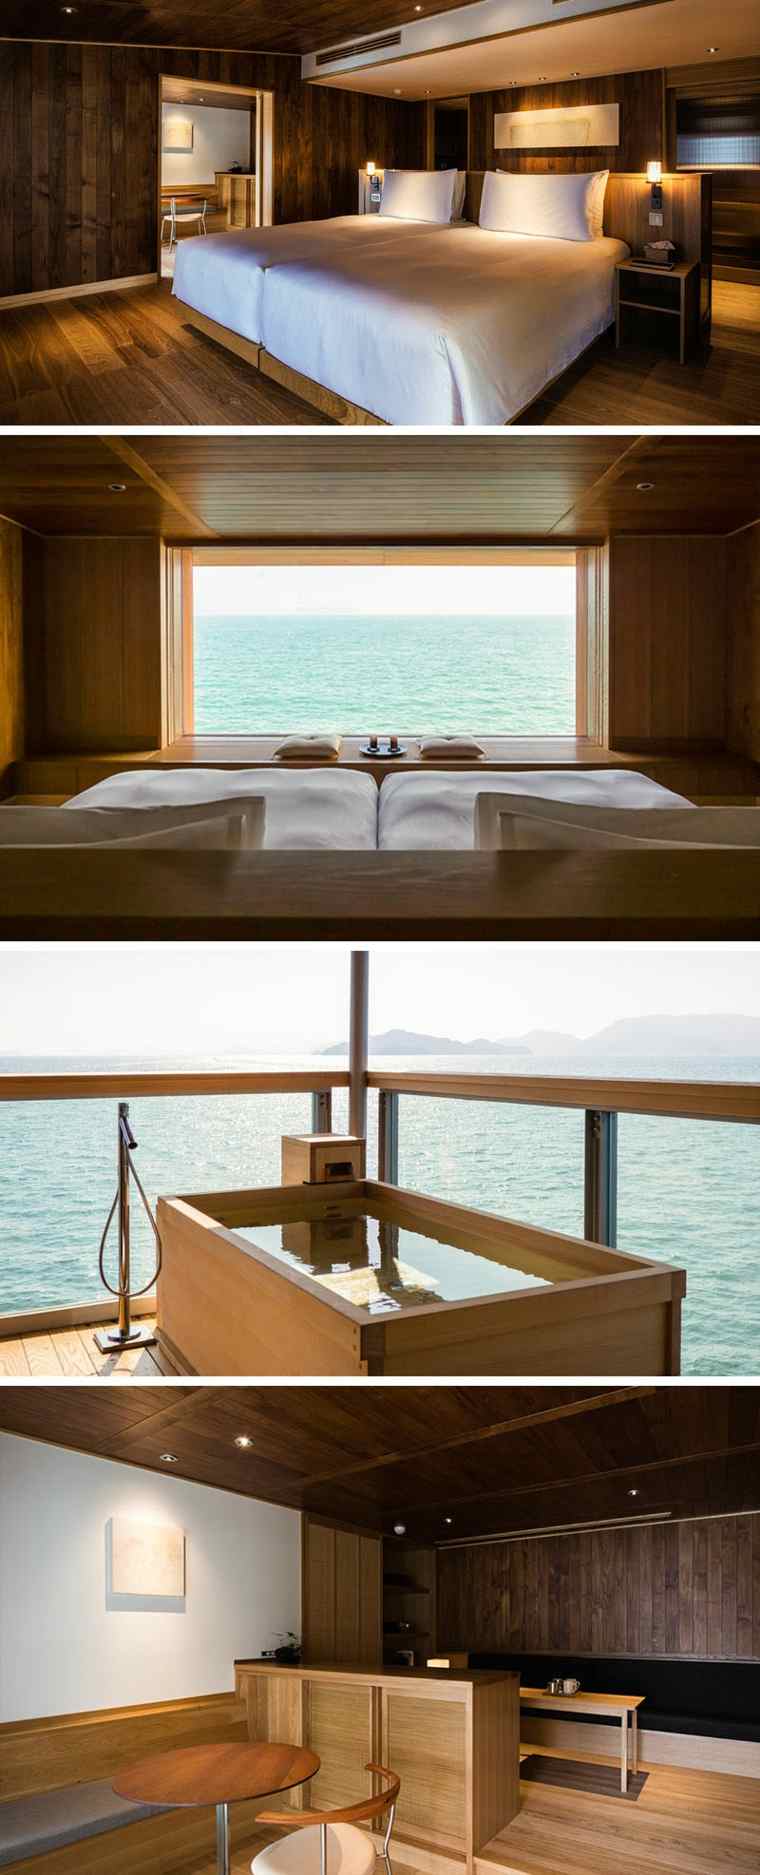 bateau hotel-flottant-guntu-suite-baignoire-exterieure